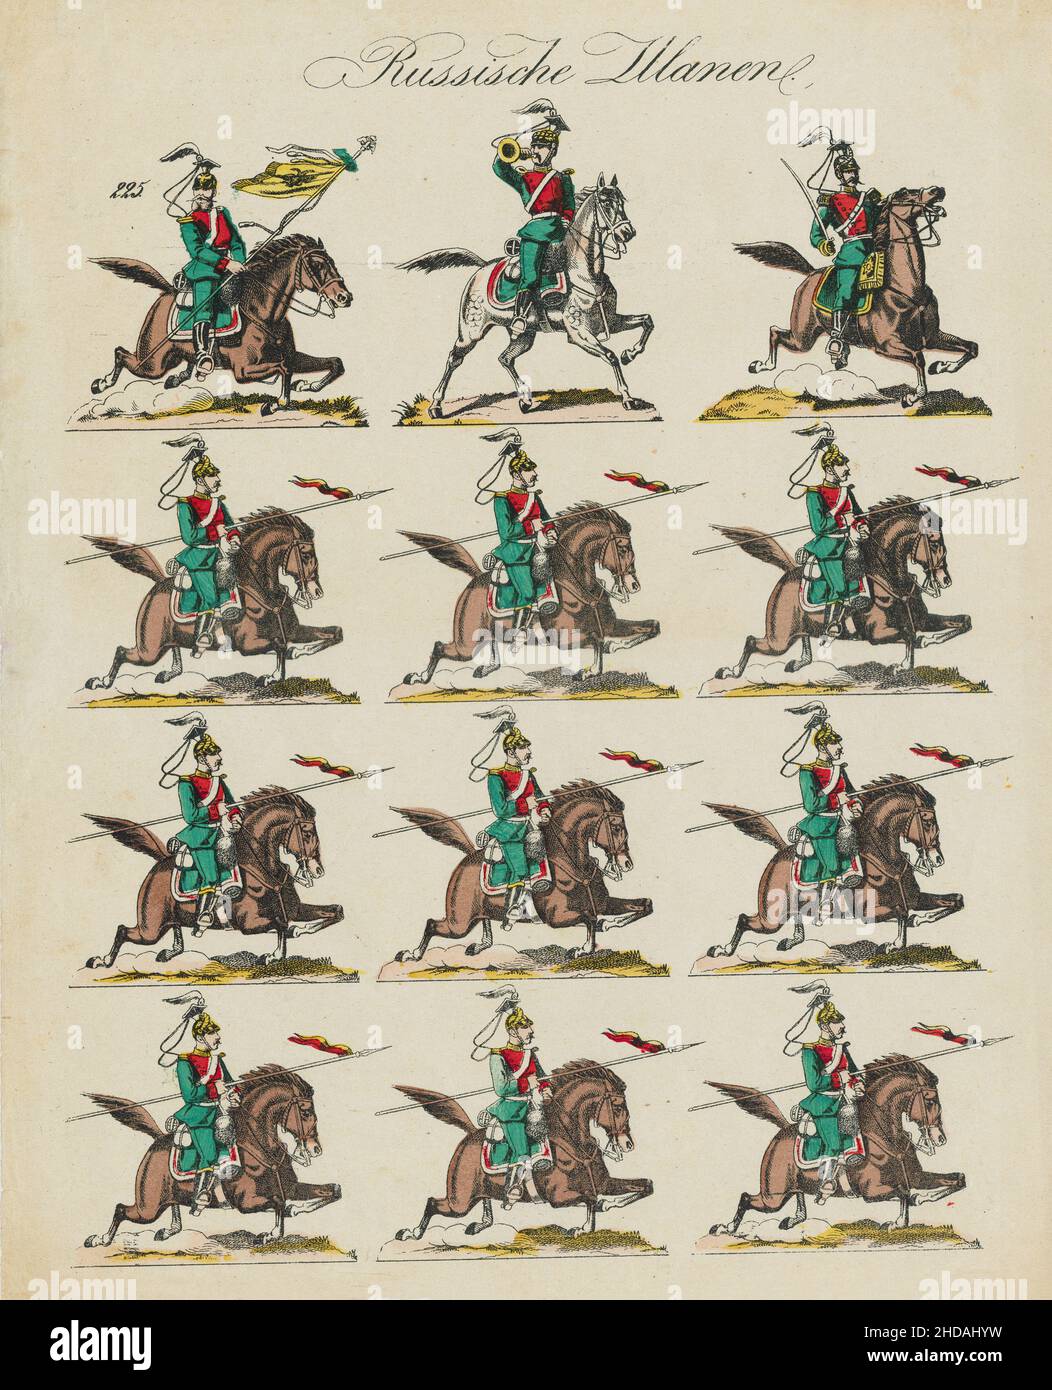 Alte deutsche Illustrationen der russischen Kaiserlichen Armee: Russische Uhlane. 1860 Stockfoto